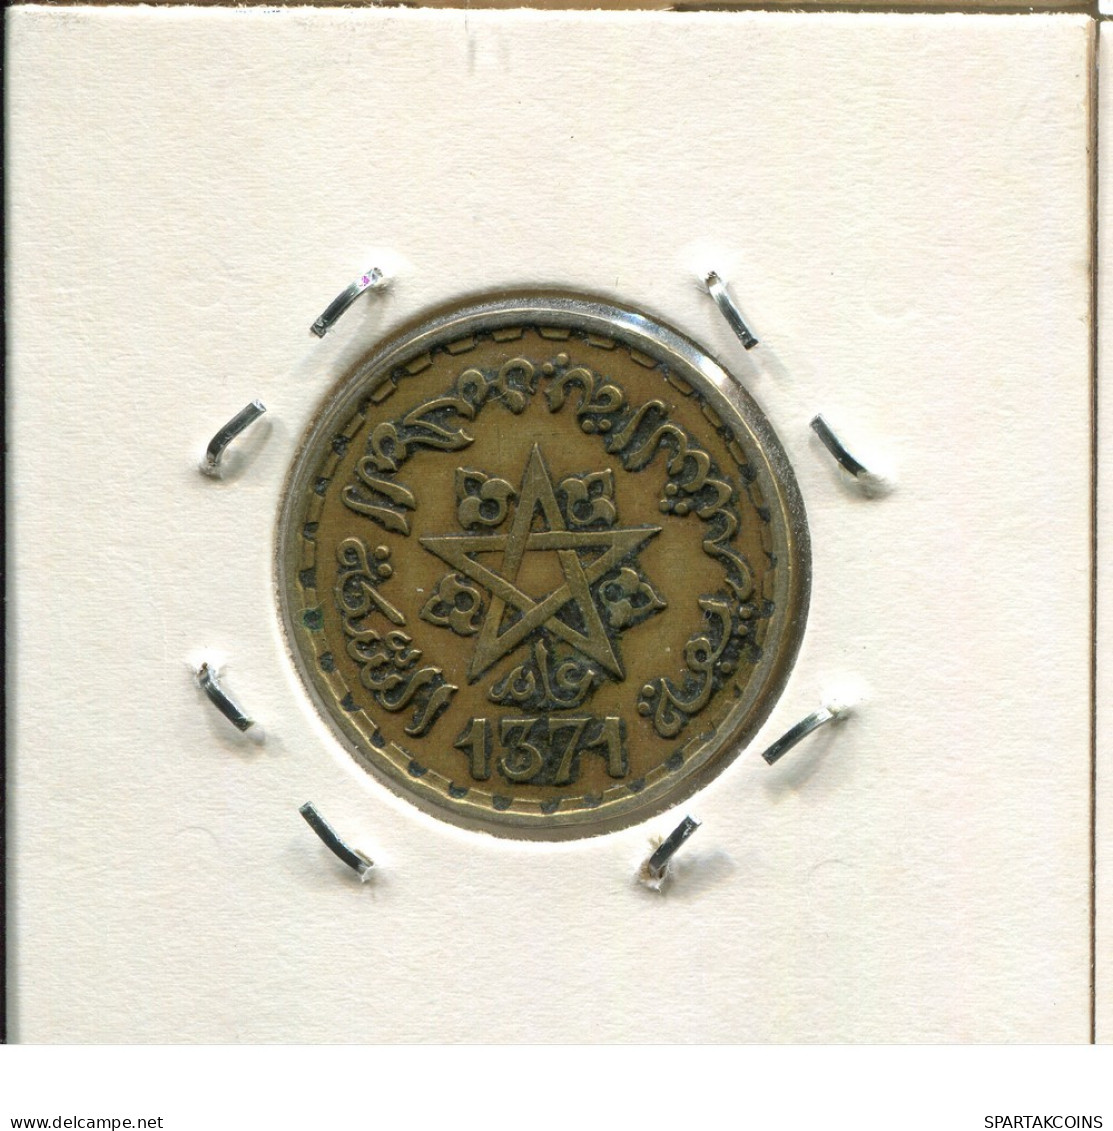 20 FRANCS 1953 MOROCCO Coin #AS084.U.A - Morocco